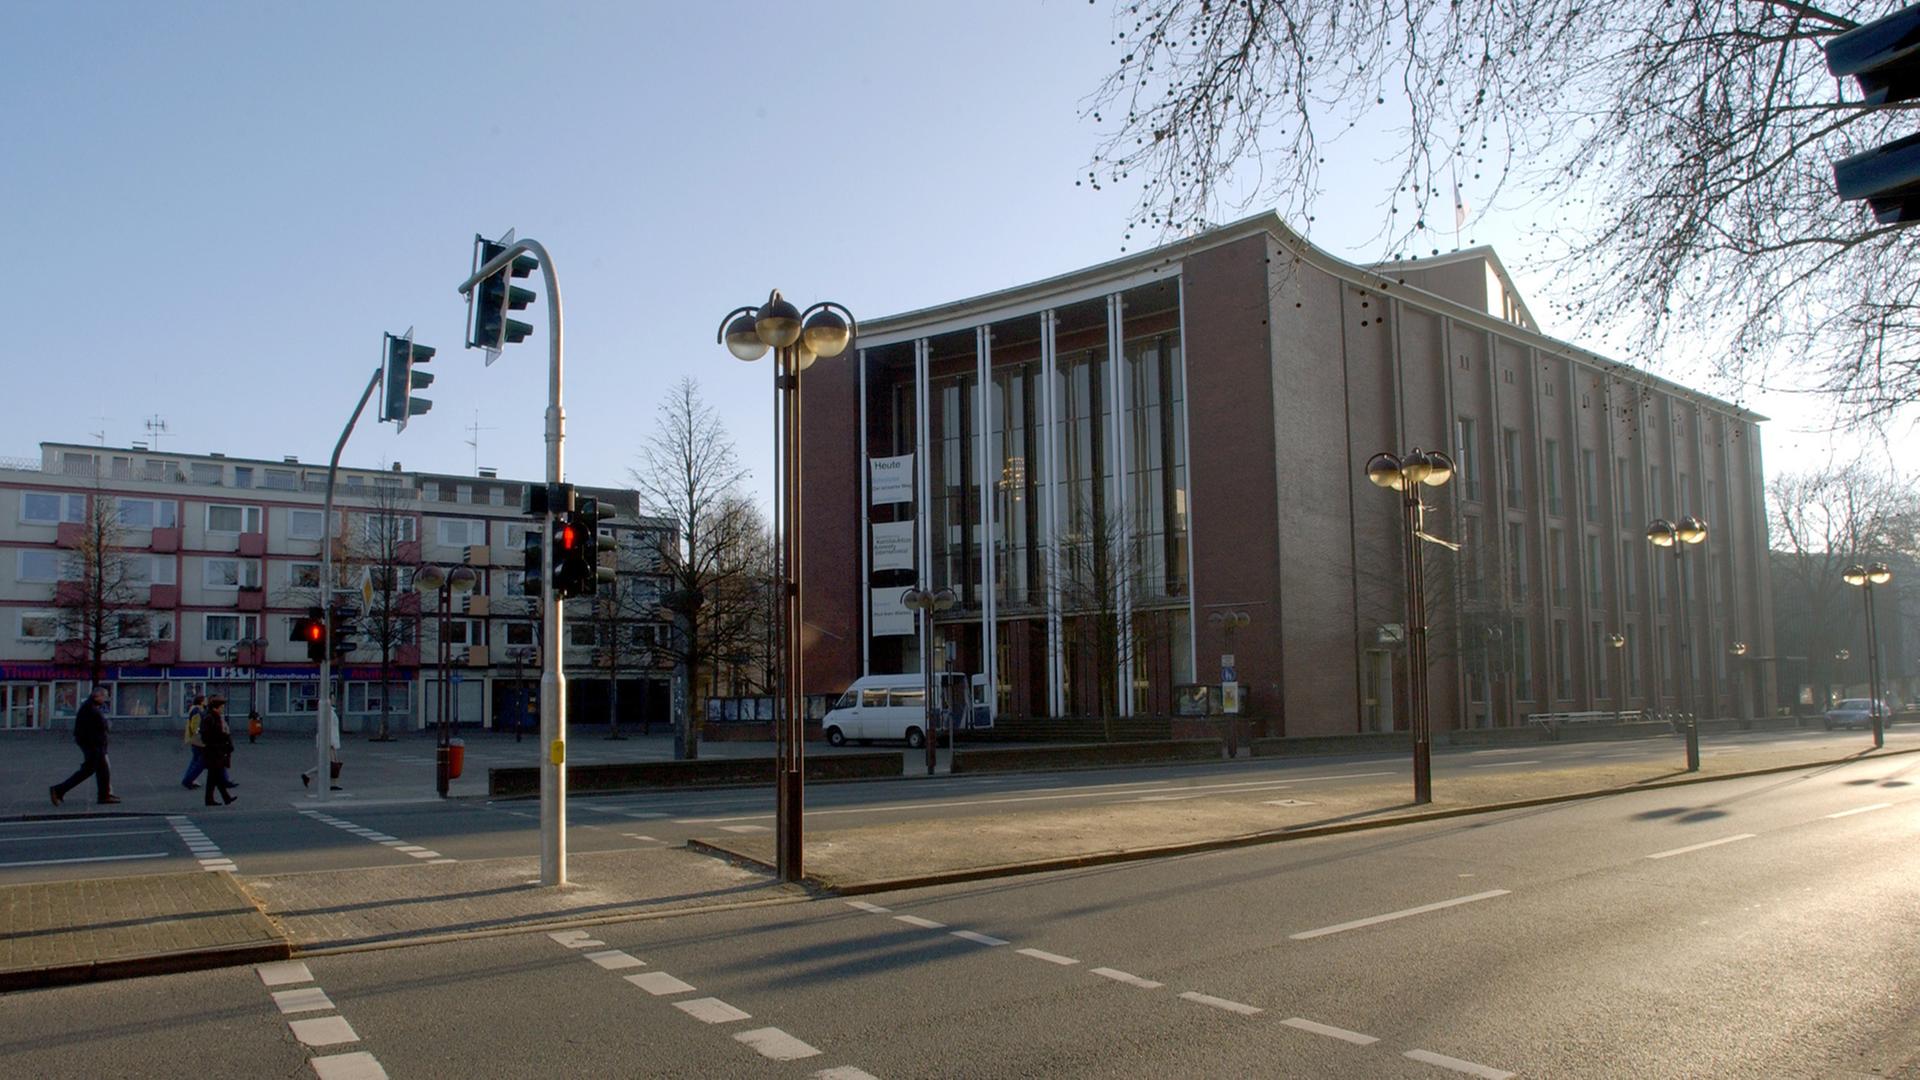 Das Schauspielhaus in Bochum